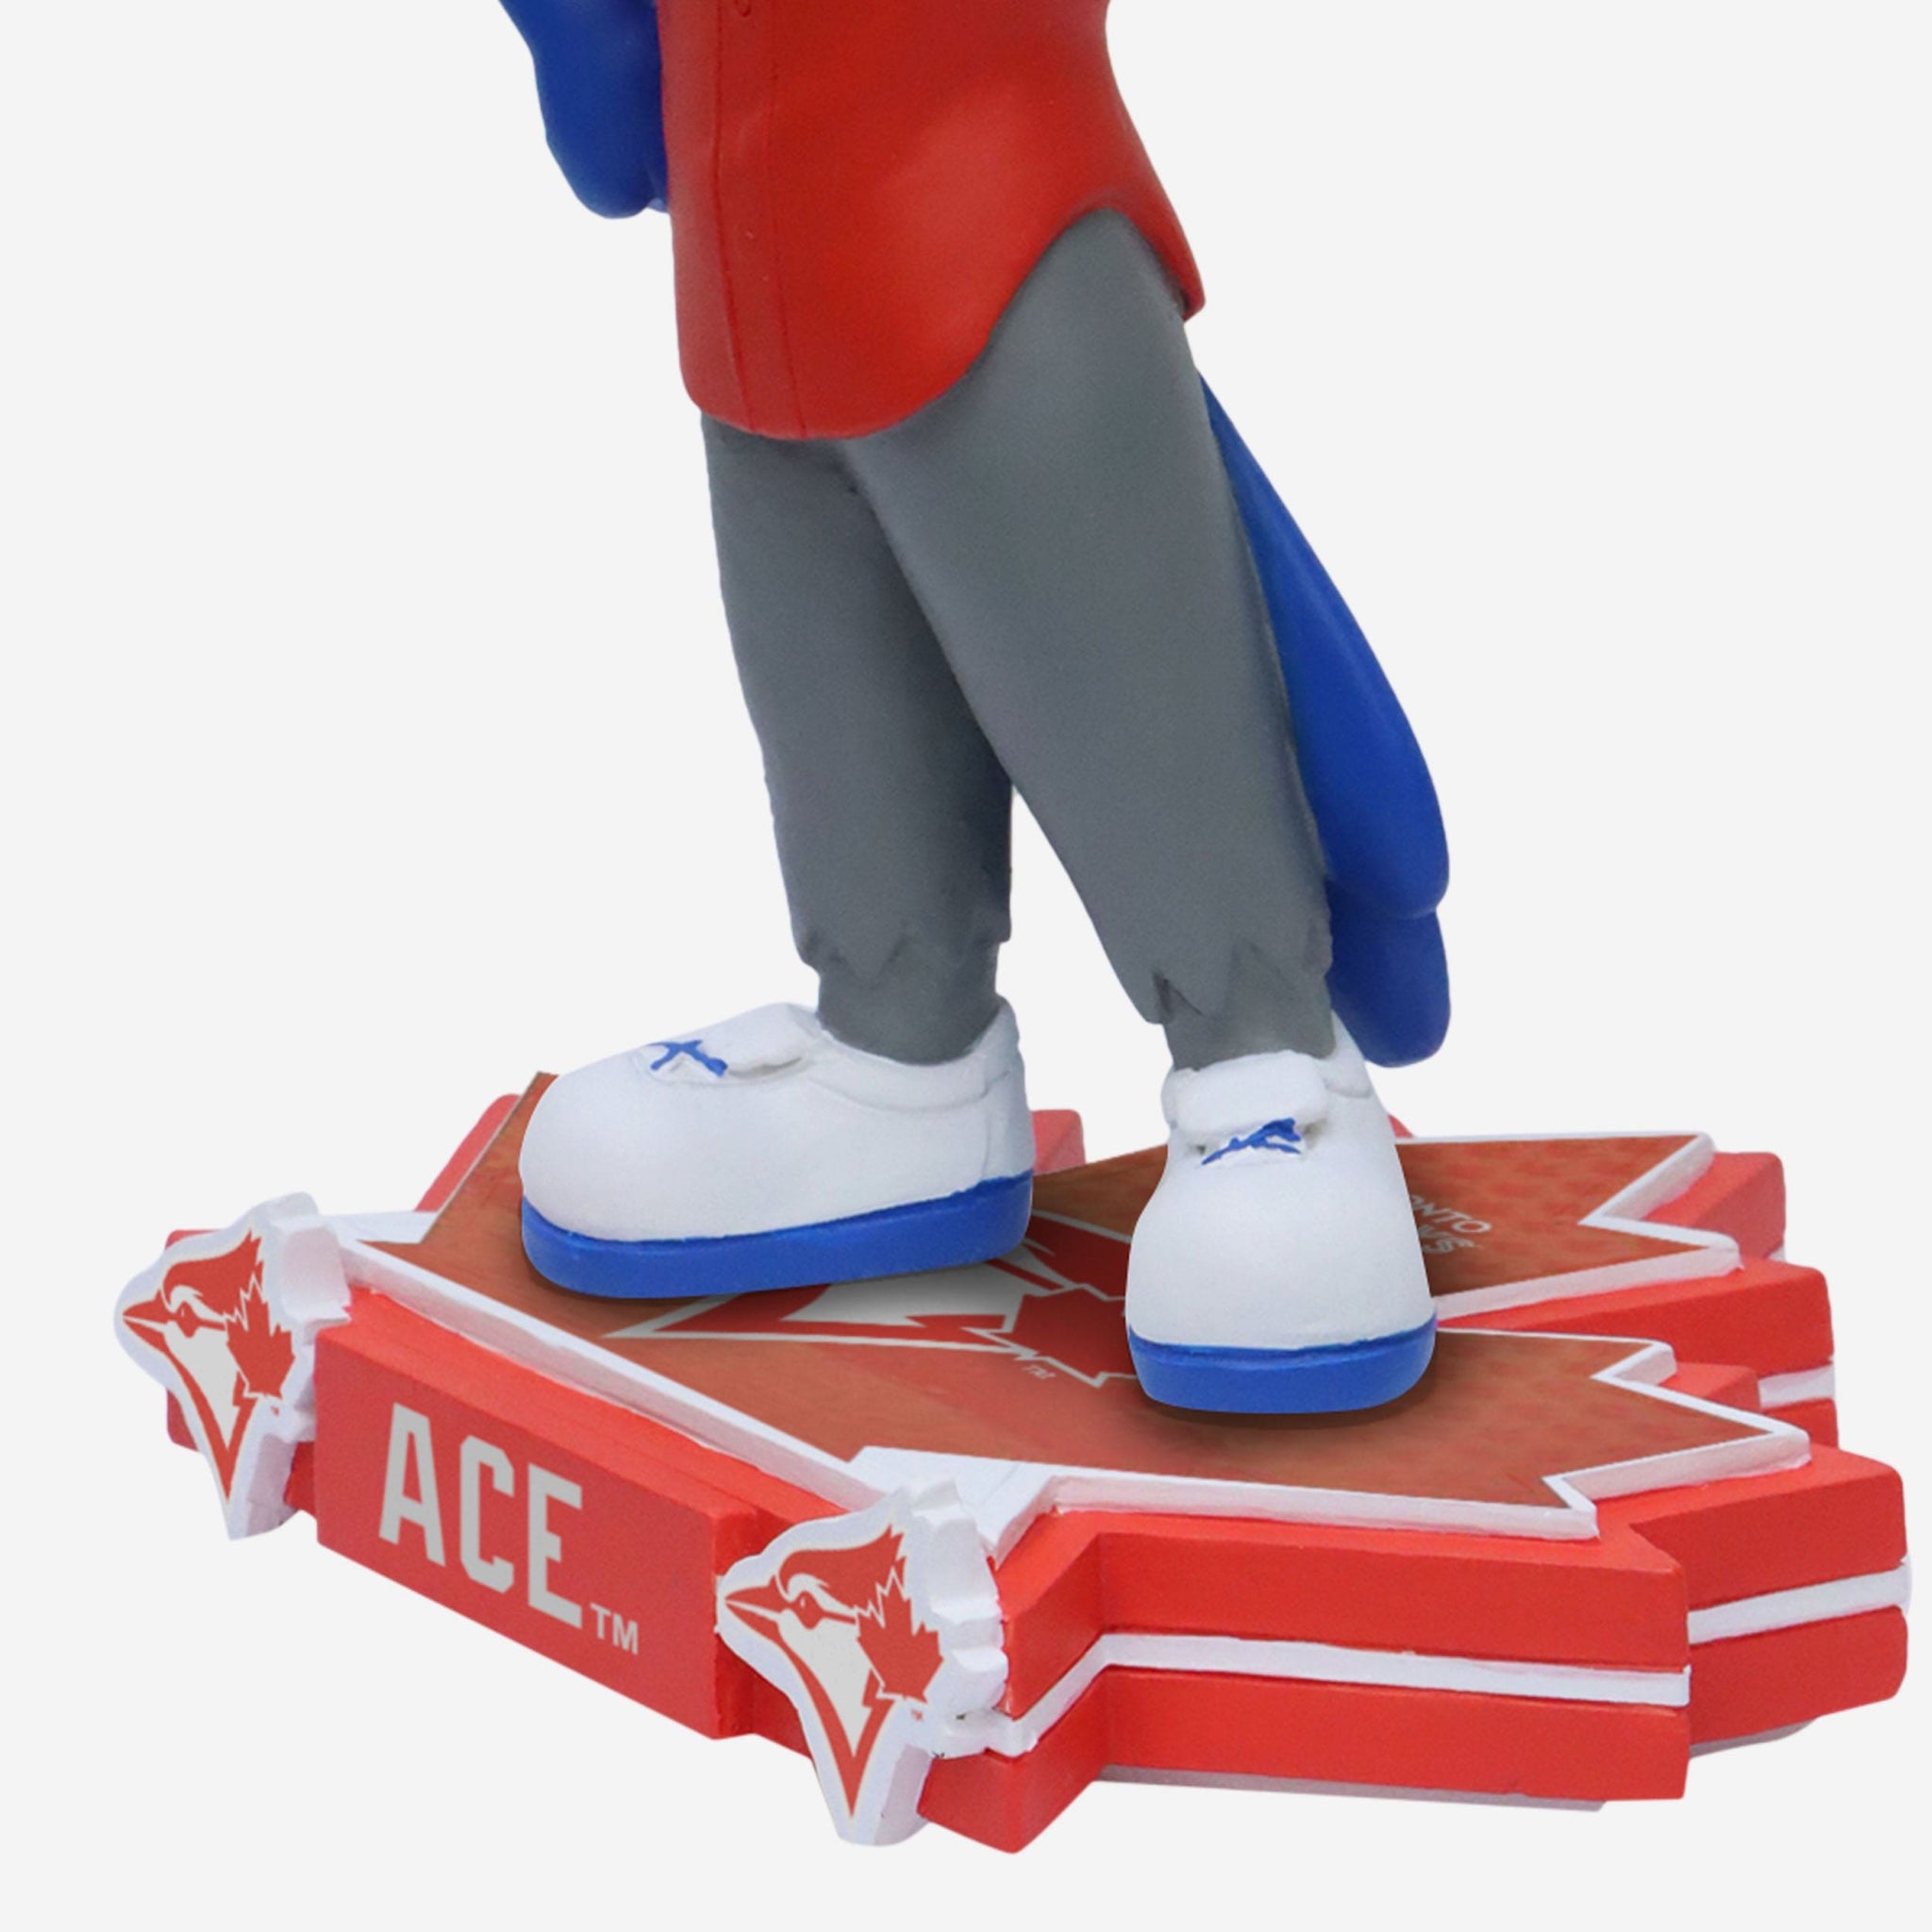 Ace Toronto Blue Jays Holiday Mascot Bobblehead FOCO